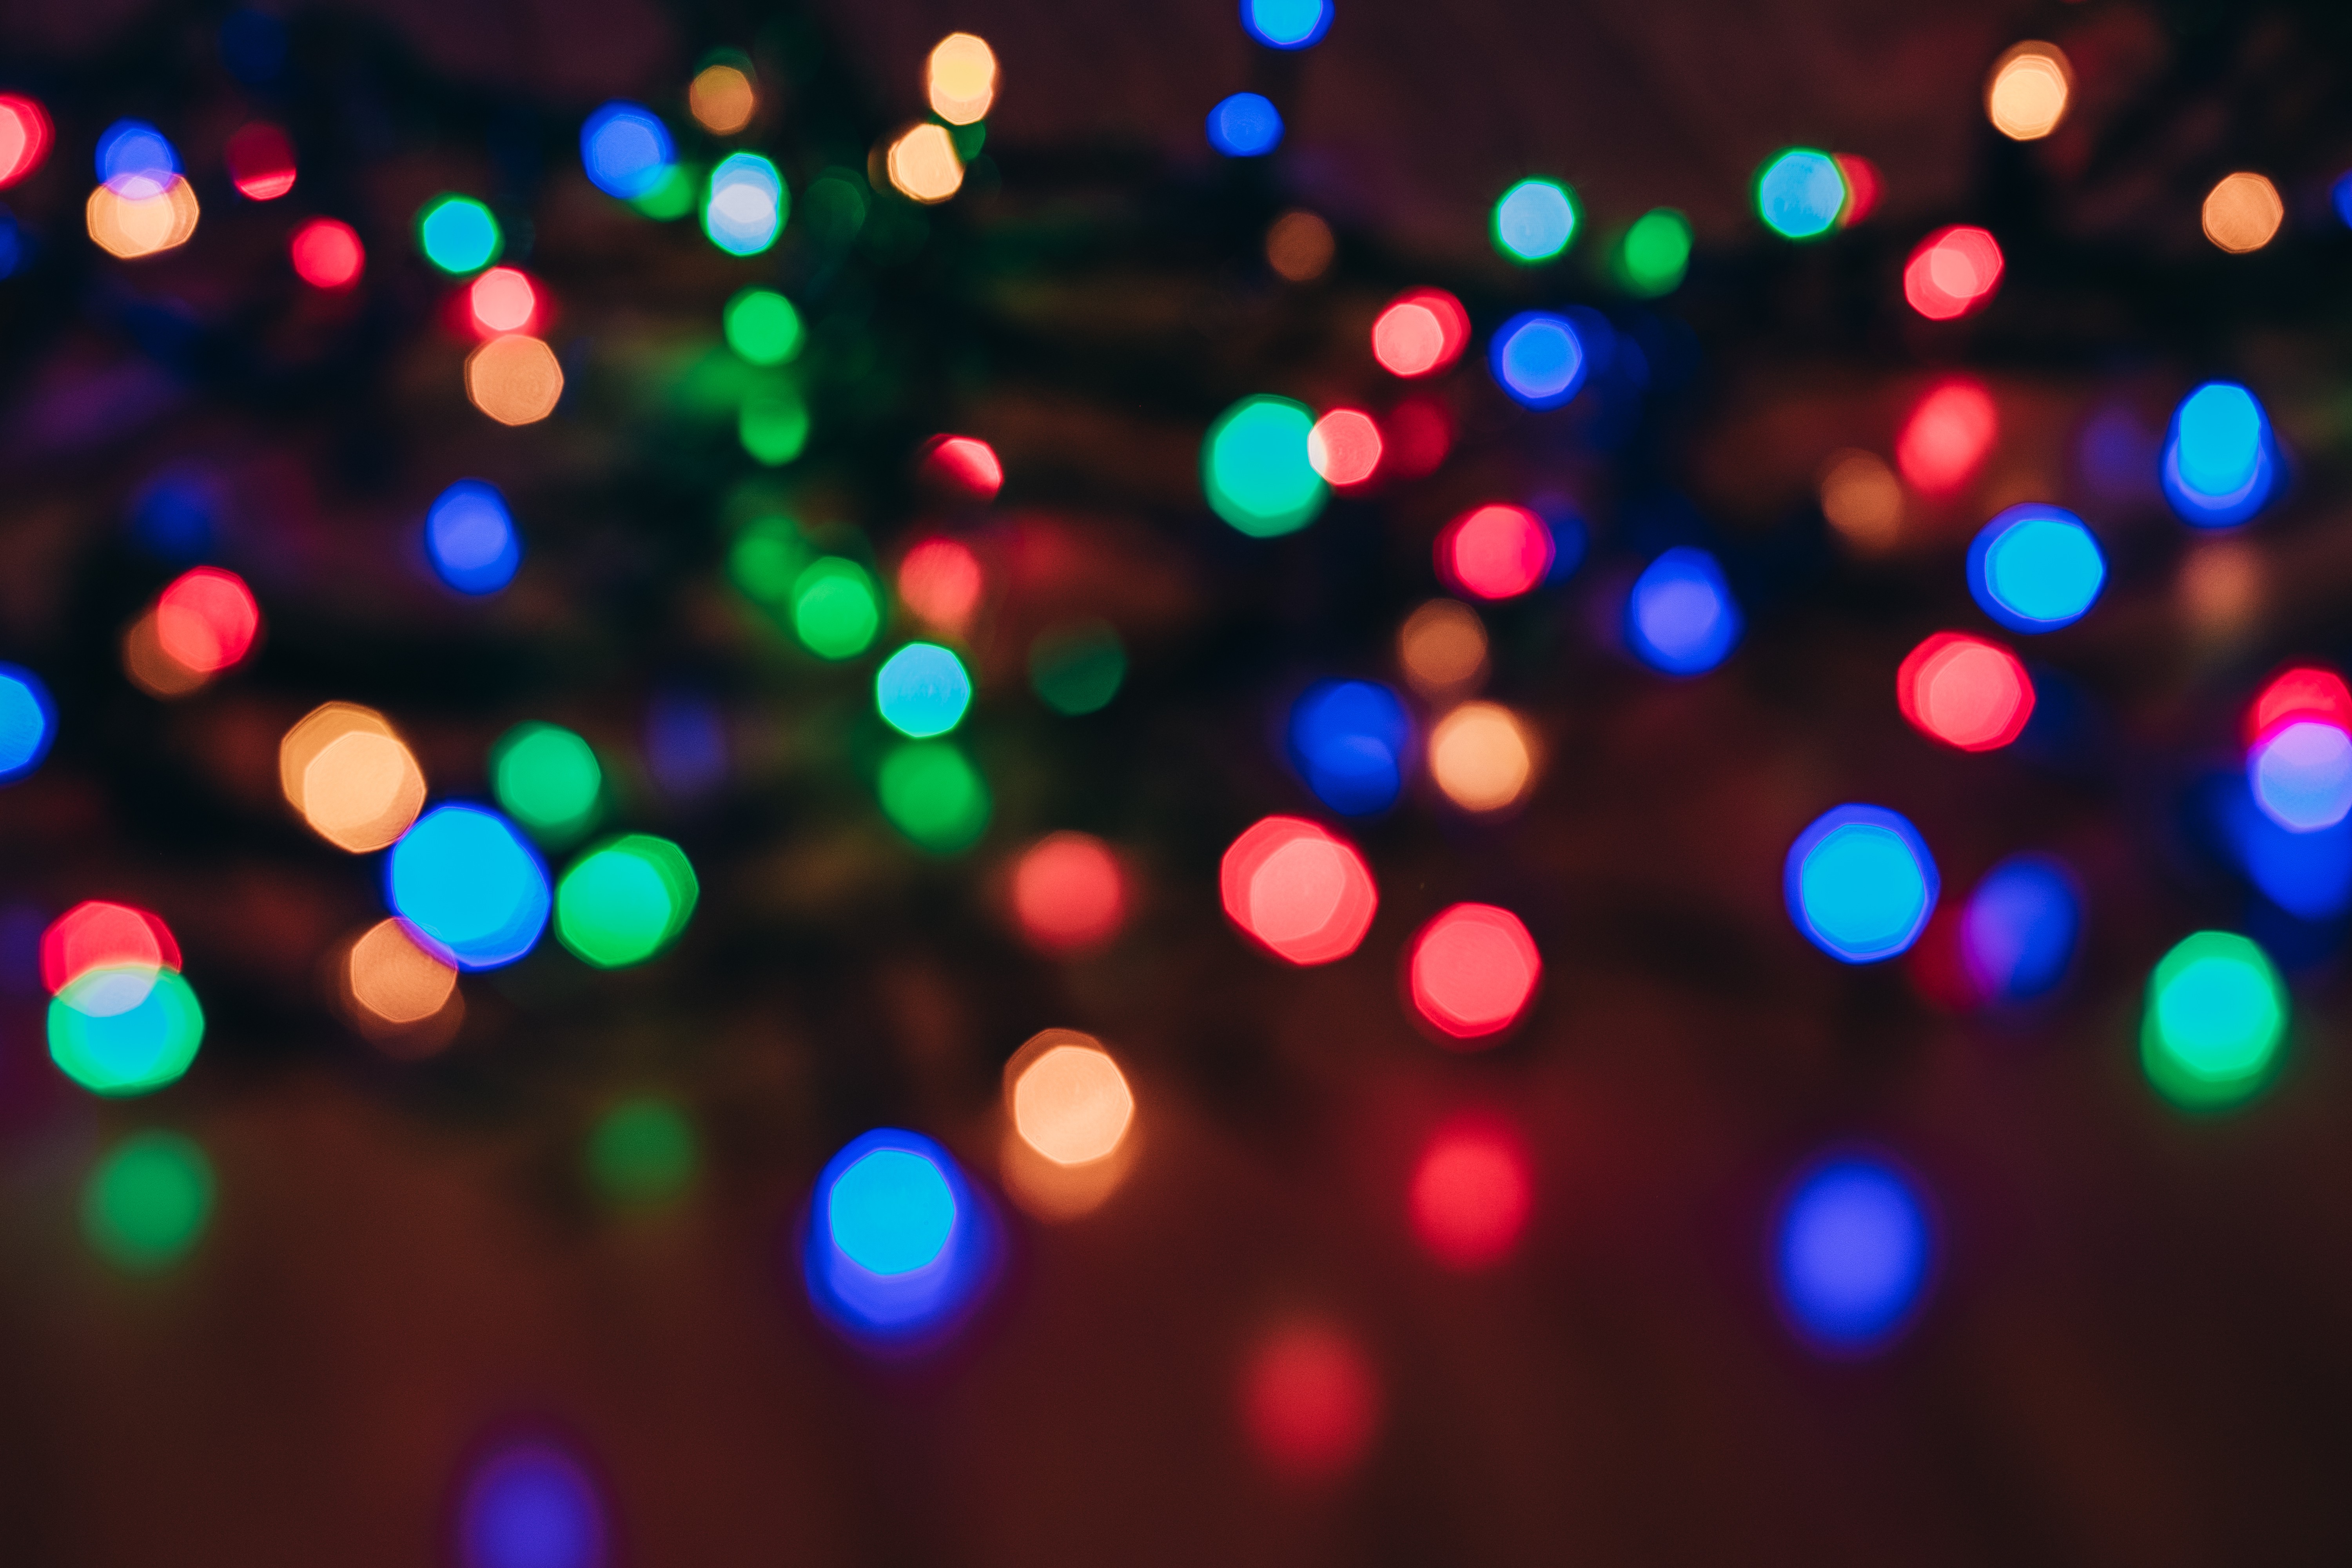 blurred christmas lights